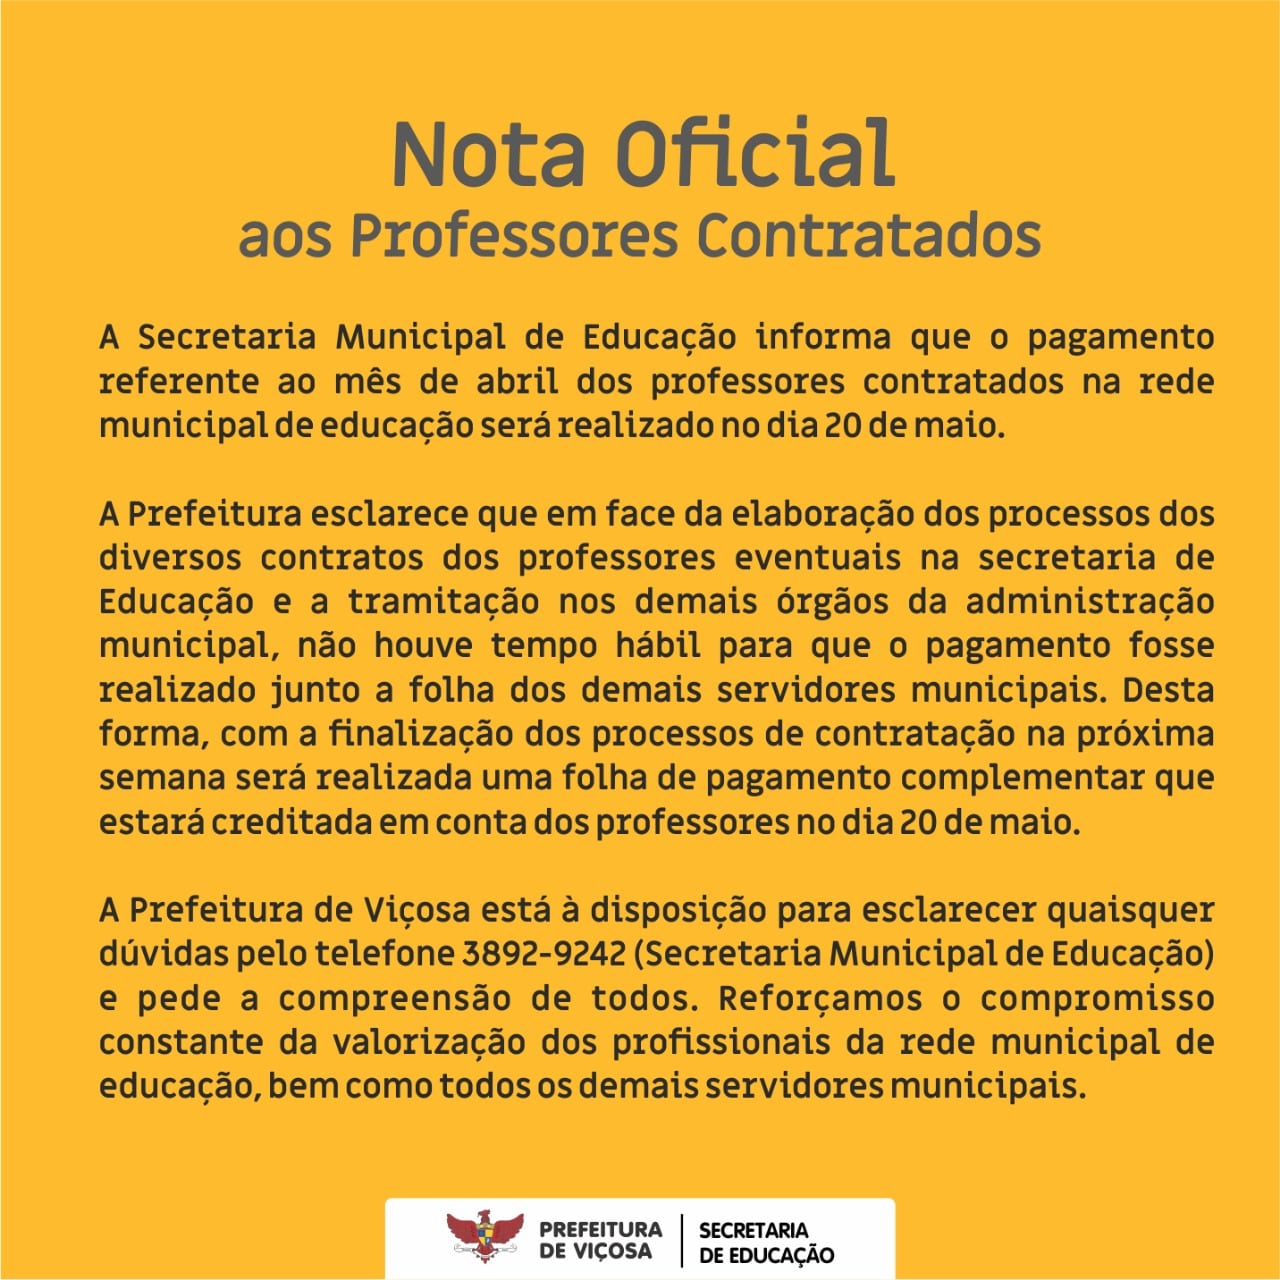 PREFEITURA DE VIÇOSA DIVULGA NOTA OFICIAL AOS PROFESSORES CONTRATADOS